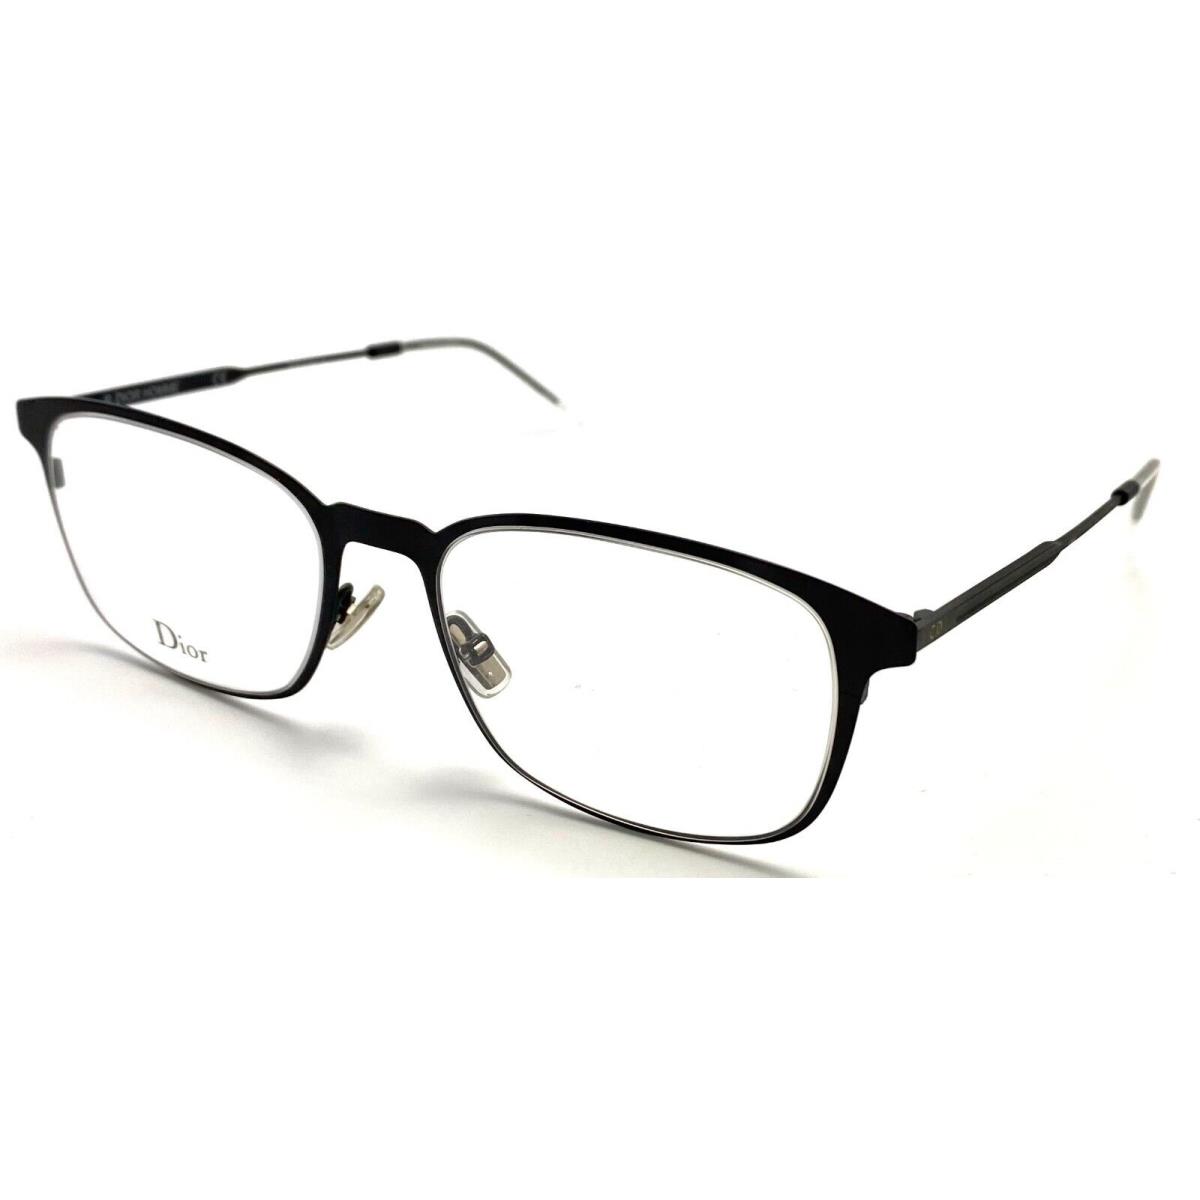 Dior Homme 0303 807 Black Eyeglasses Frame 51-21 145 - Frame: Black